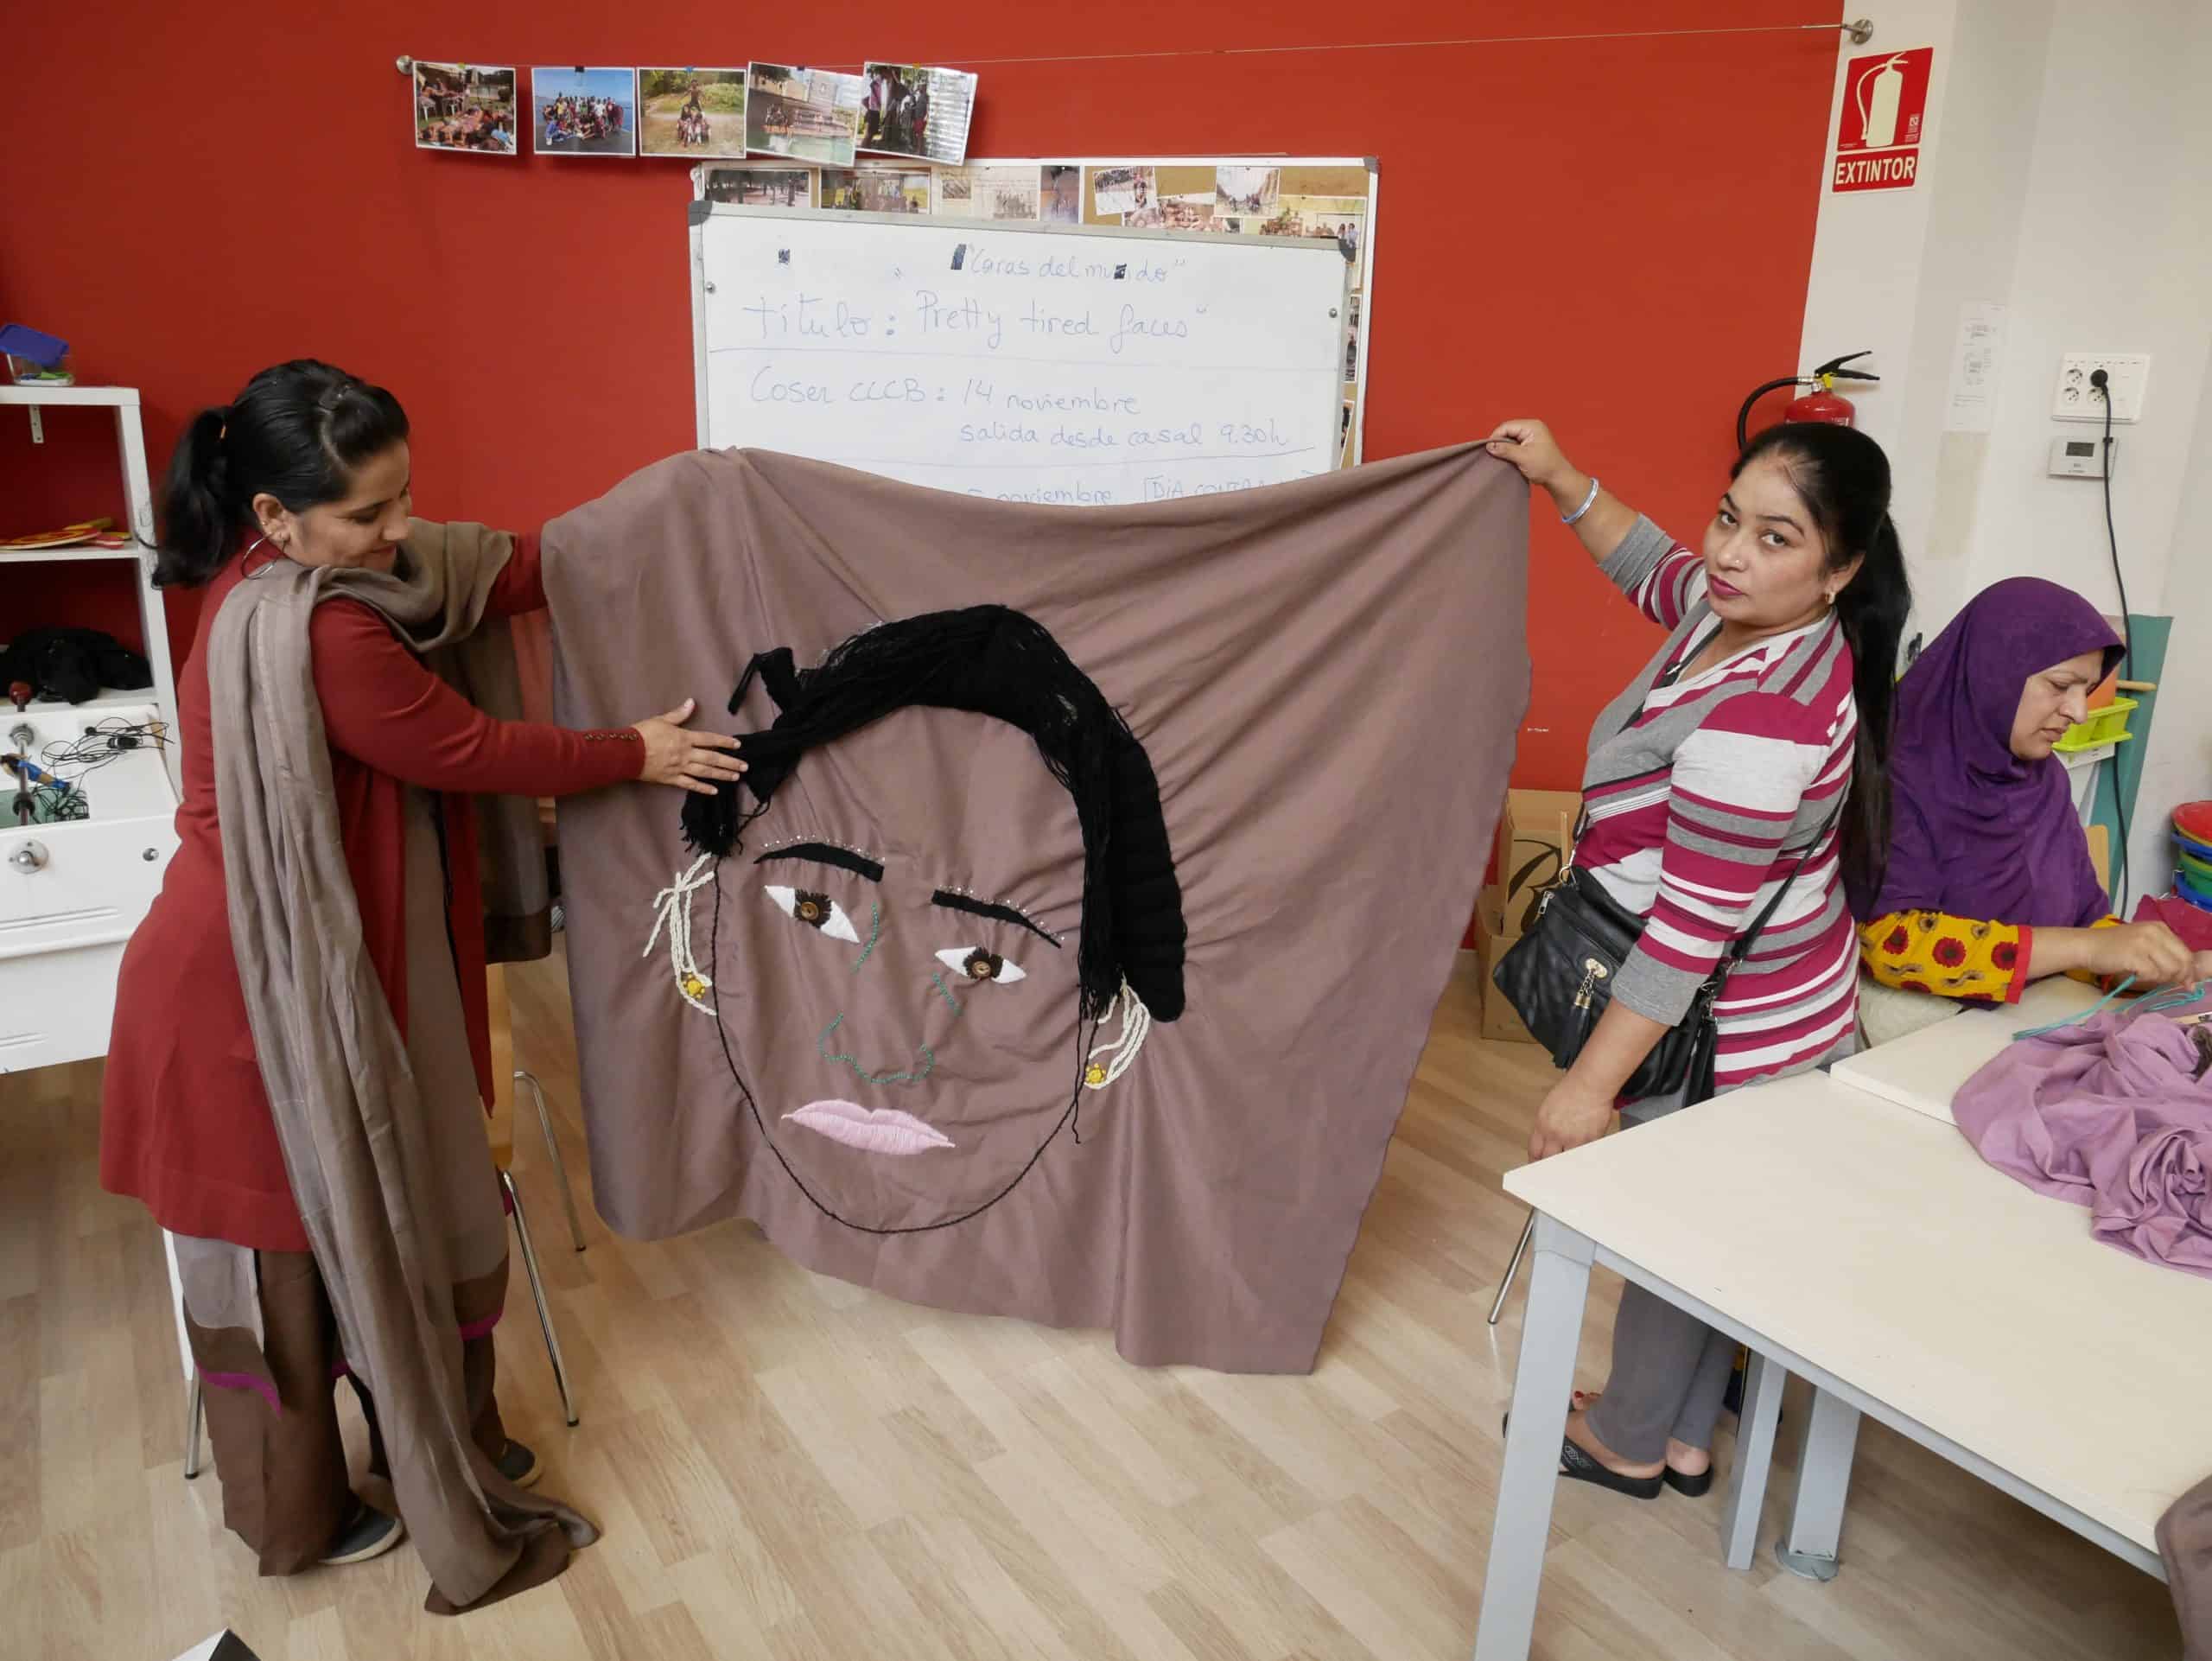 El CCCB exposarà retrats tèxtils realitzats per dones del Casal Familiar de Santa Coloma de Gramenet, en paral•lel a l’exposició Feminismes!